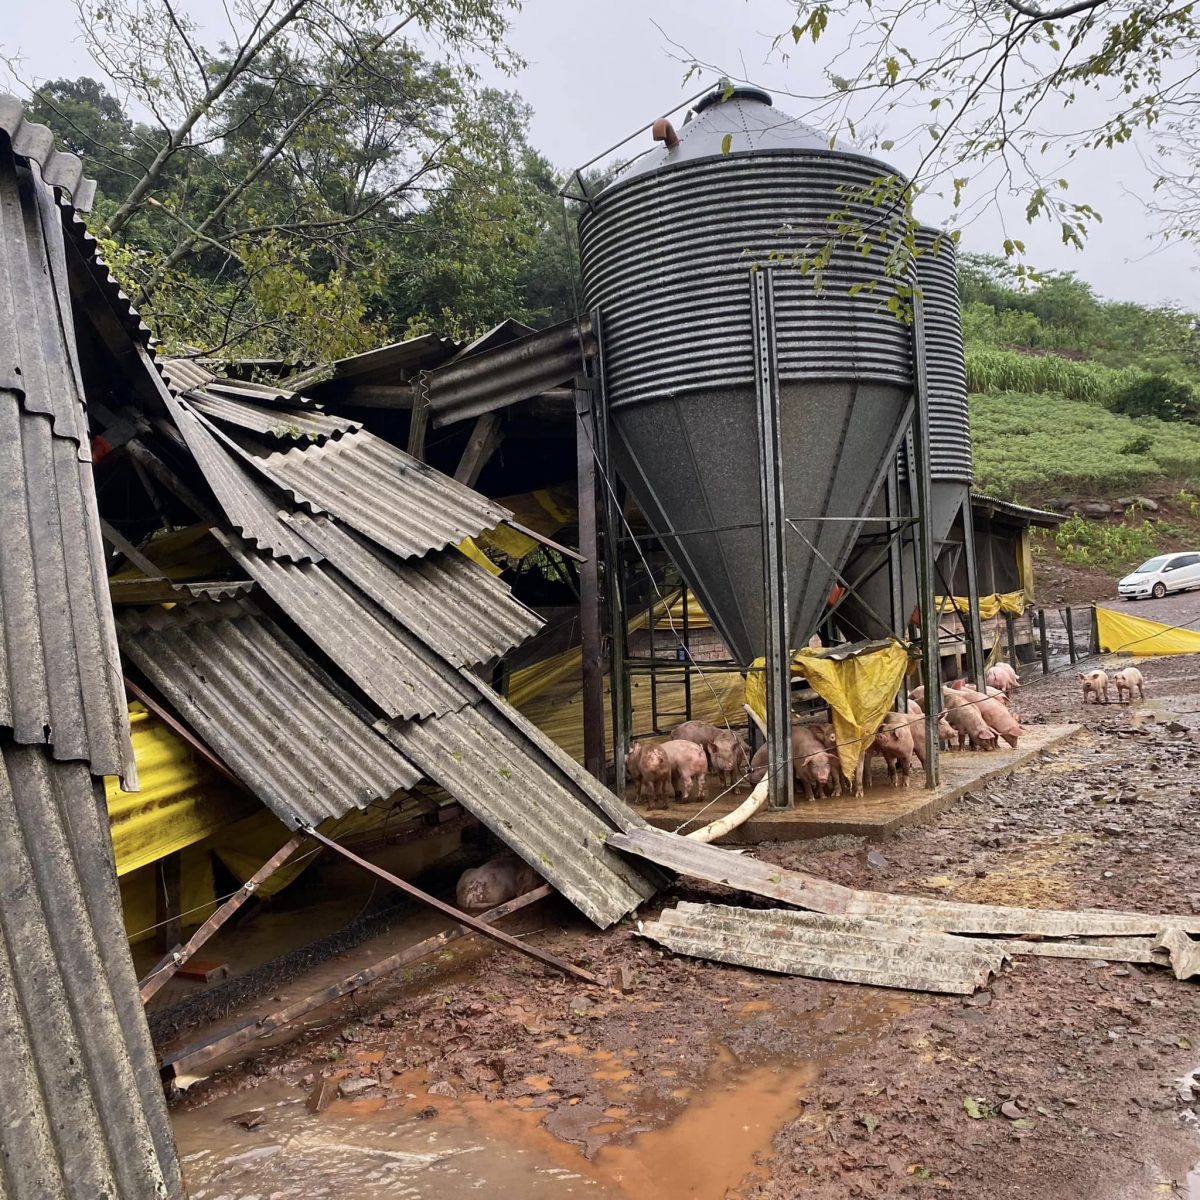 Em Tupandi/RS, uma granja teve sua estrutura comprometida e registrou a morte de animais depois de ser atingida pela enchente. Crédito: Prefeitura de Tupandi/RS.